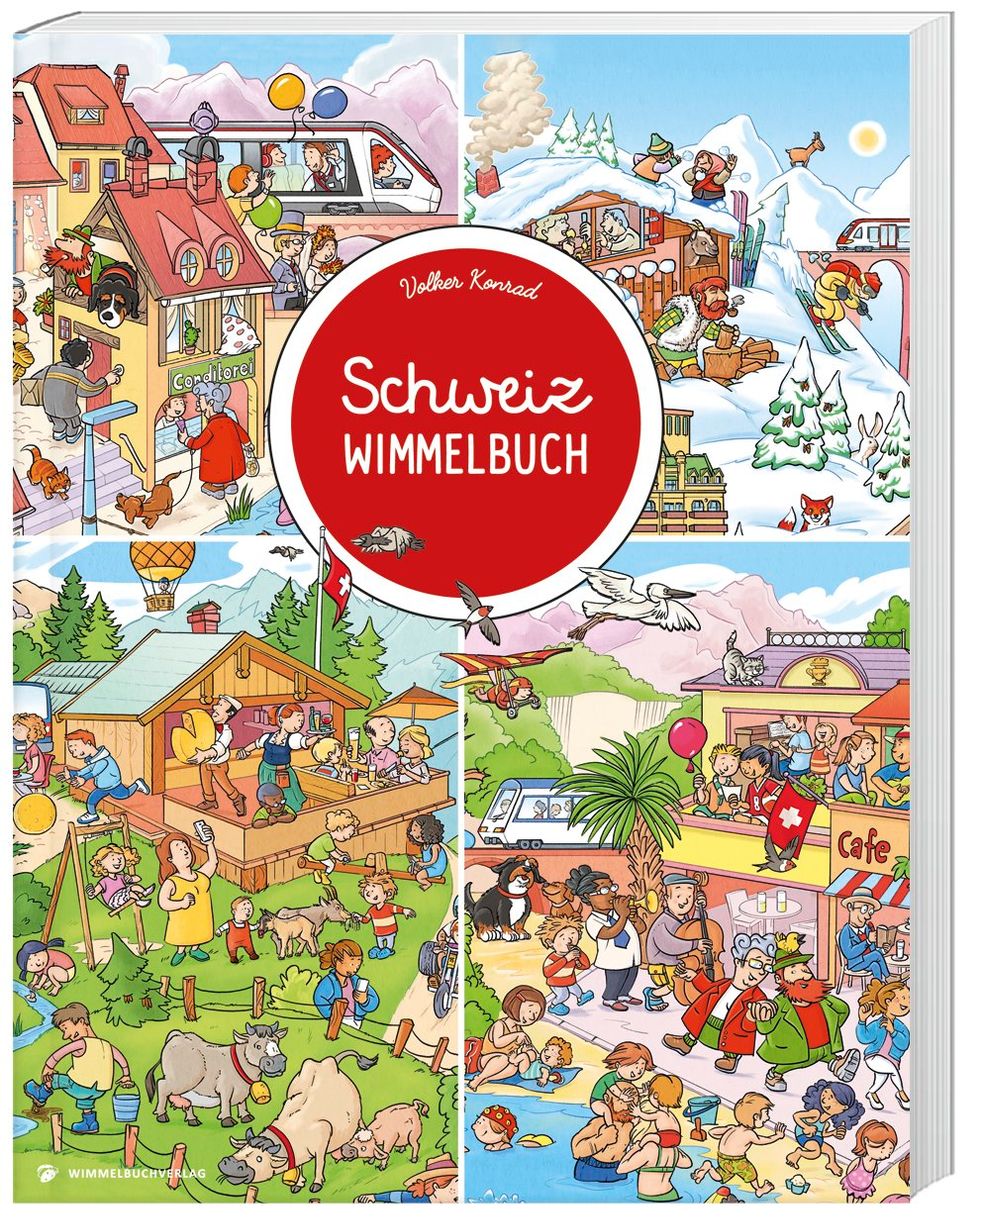 Schweiz Wimmelbuch Buch als günstige Weltbild-Ausgabe kaufen